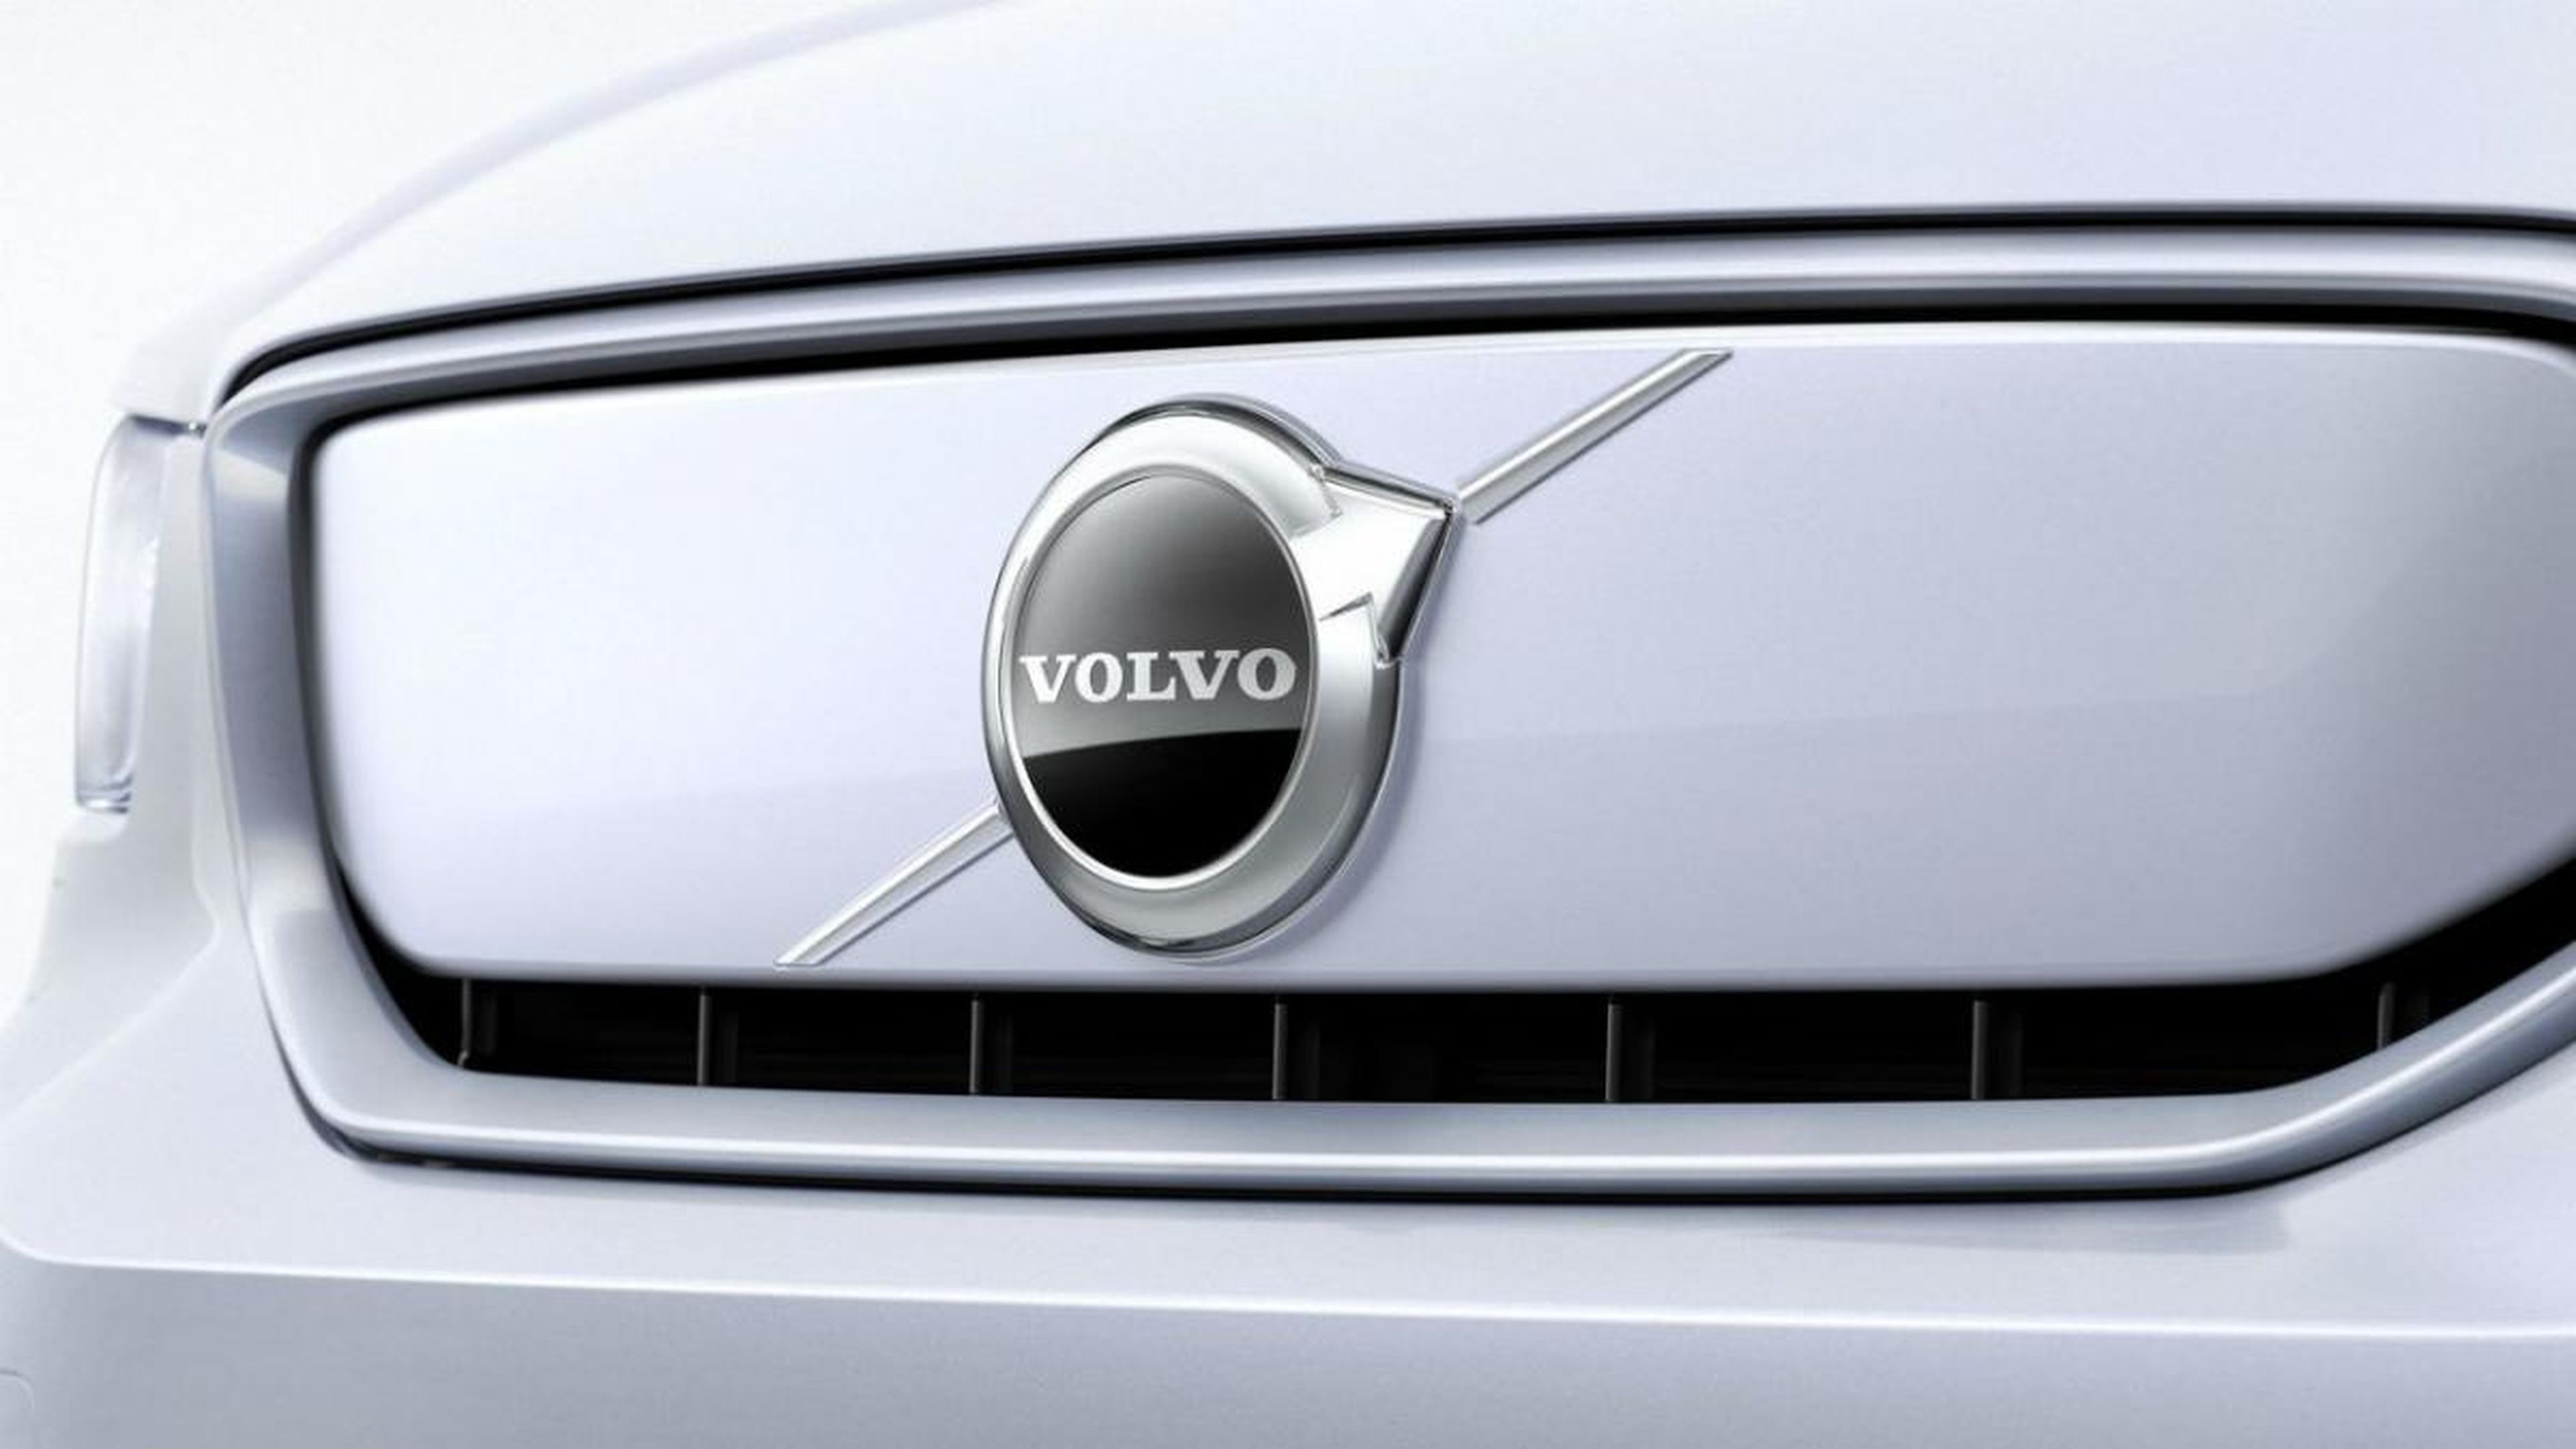 Llamada a revisión de Volvo por problemas en algunos sistemas de seguridad